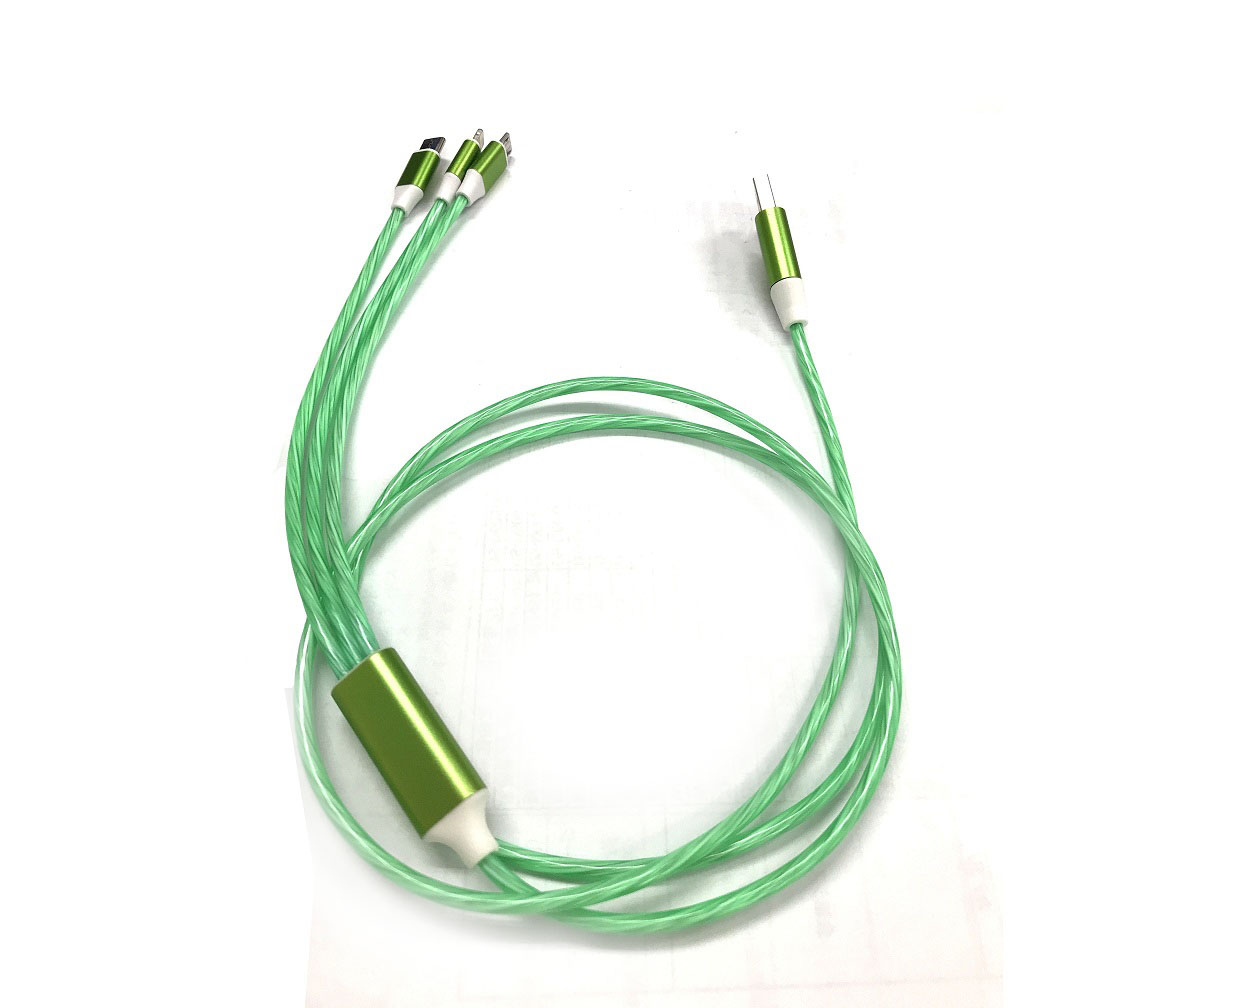 発光タイプ3in1スマートフォン用USBケーブル Type-A(2.0) MicroUSB Type-B+Type-C+Lightning(1.2メートル)緑 BS-USBSG1GS-BCL